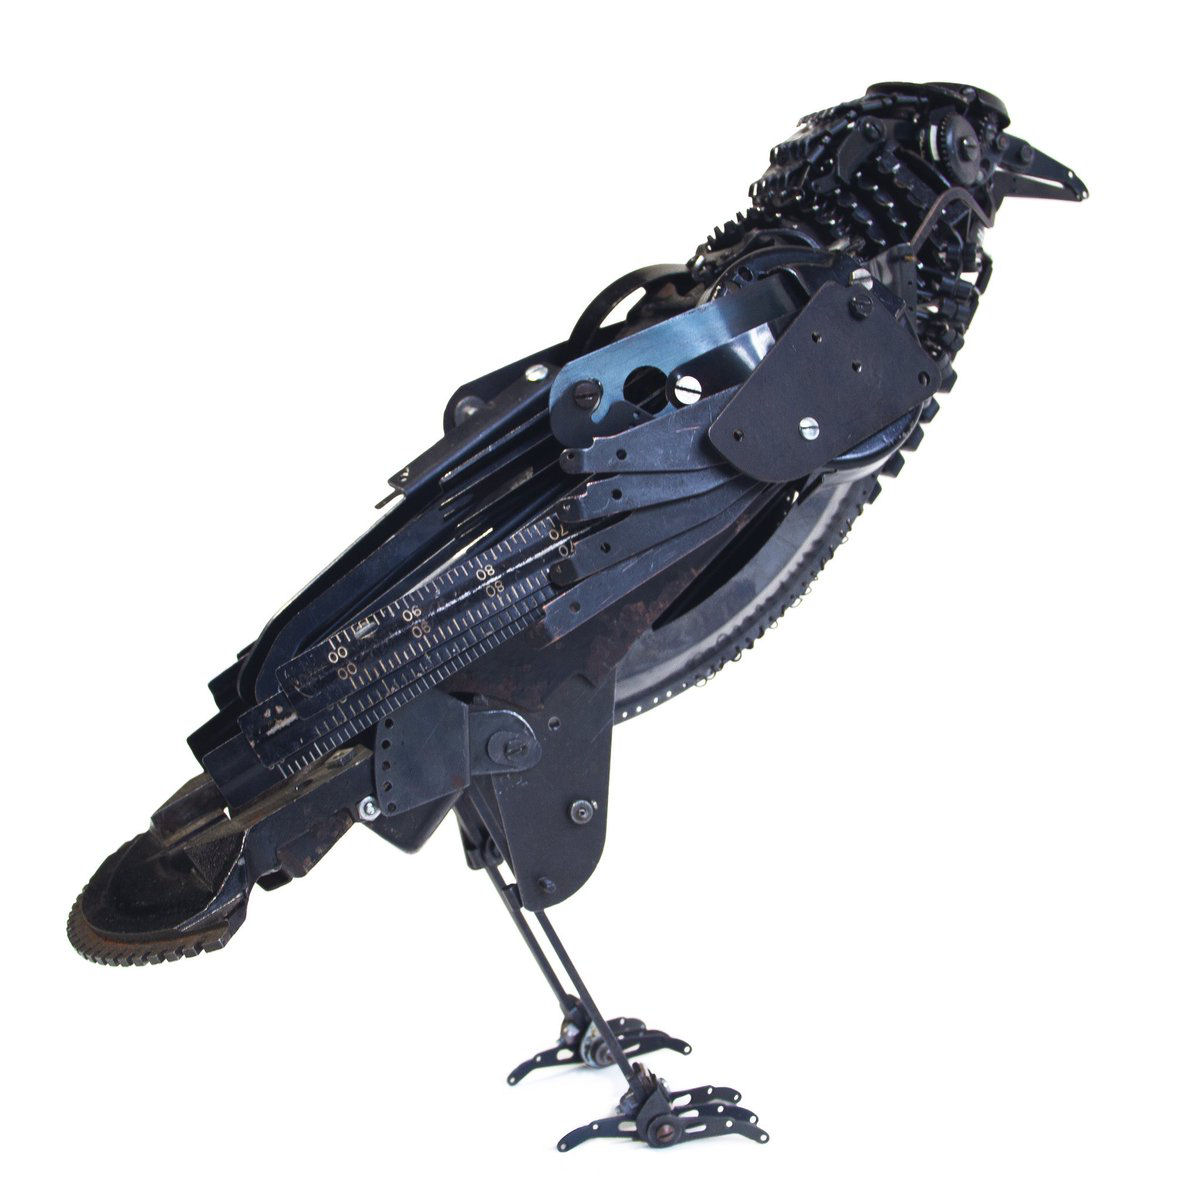 Sucata de máquinas de escrever ganham nova vida como incríveis esculturas de pássaros 09